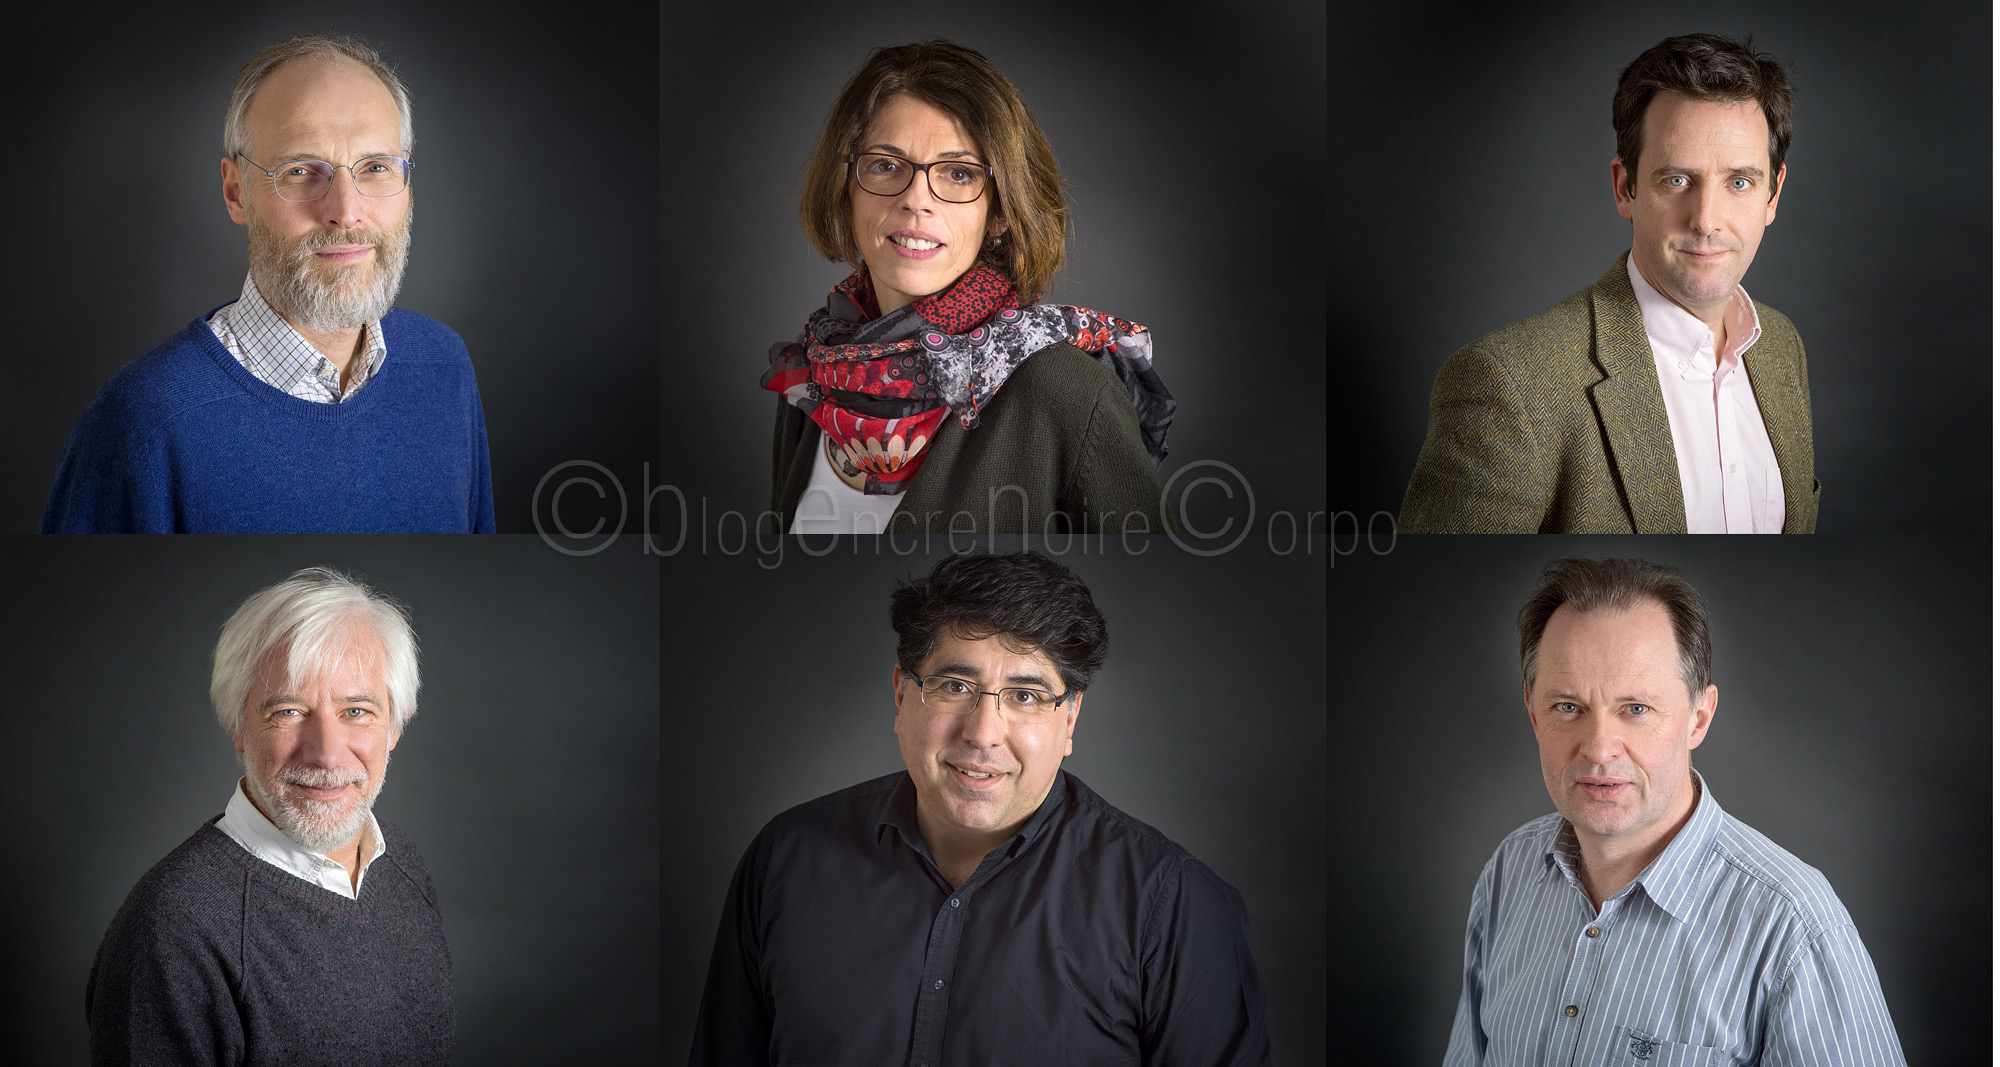 Portraits comité scientifique